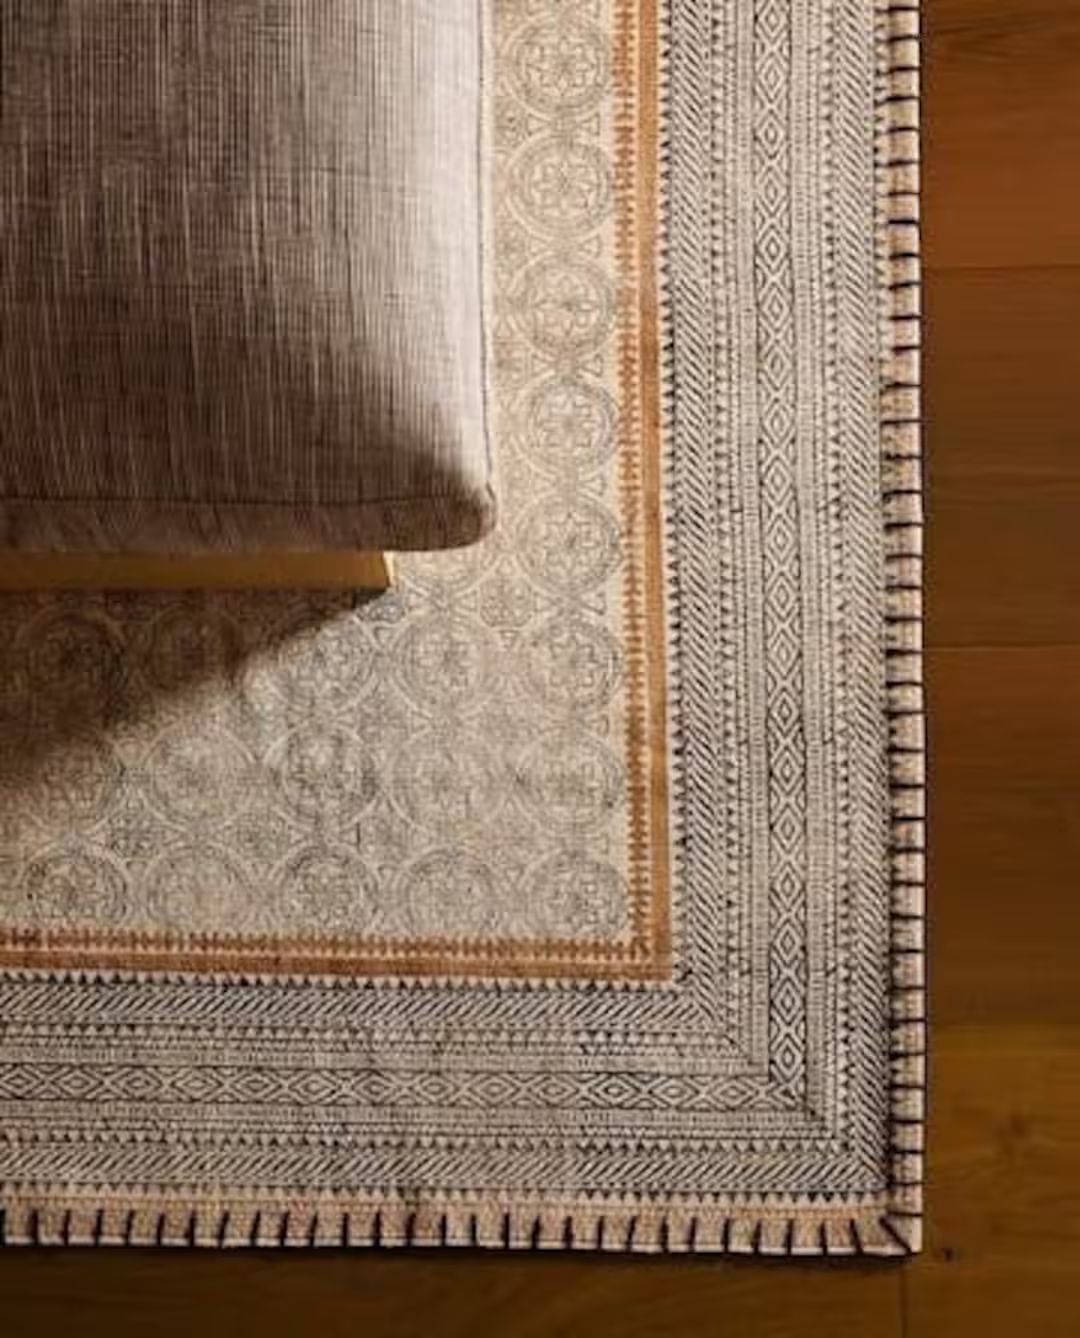 new 4x6 feet Handmade Block printed Indian Rug  / Carpet / Kilim / Floor Rug / Indian Dhurrie rug... | Etsy (US)